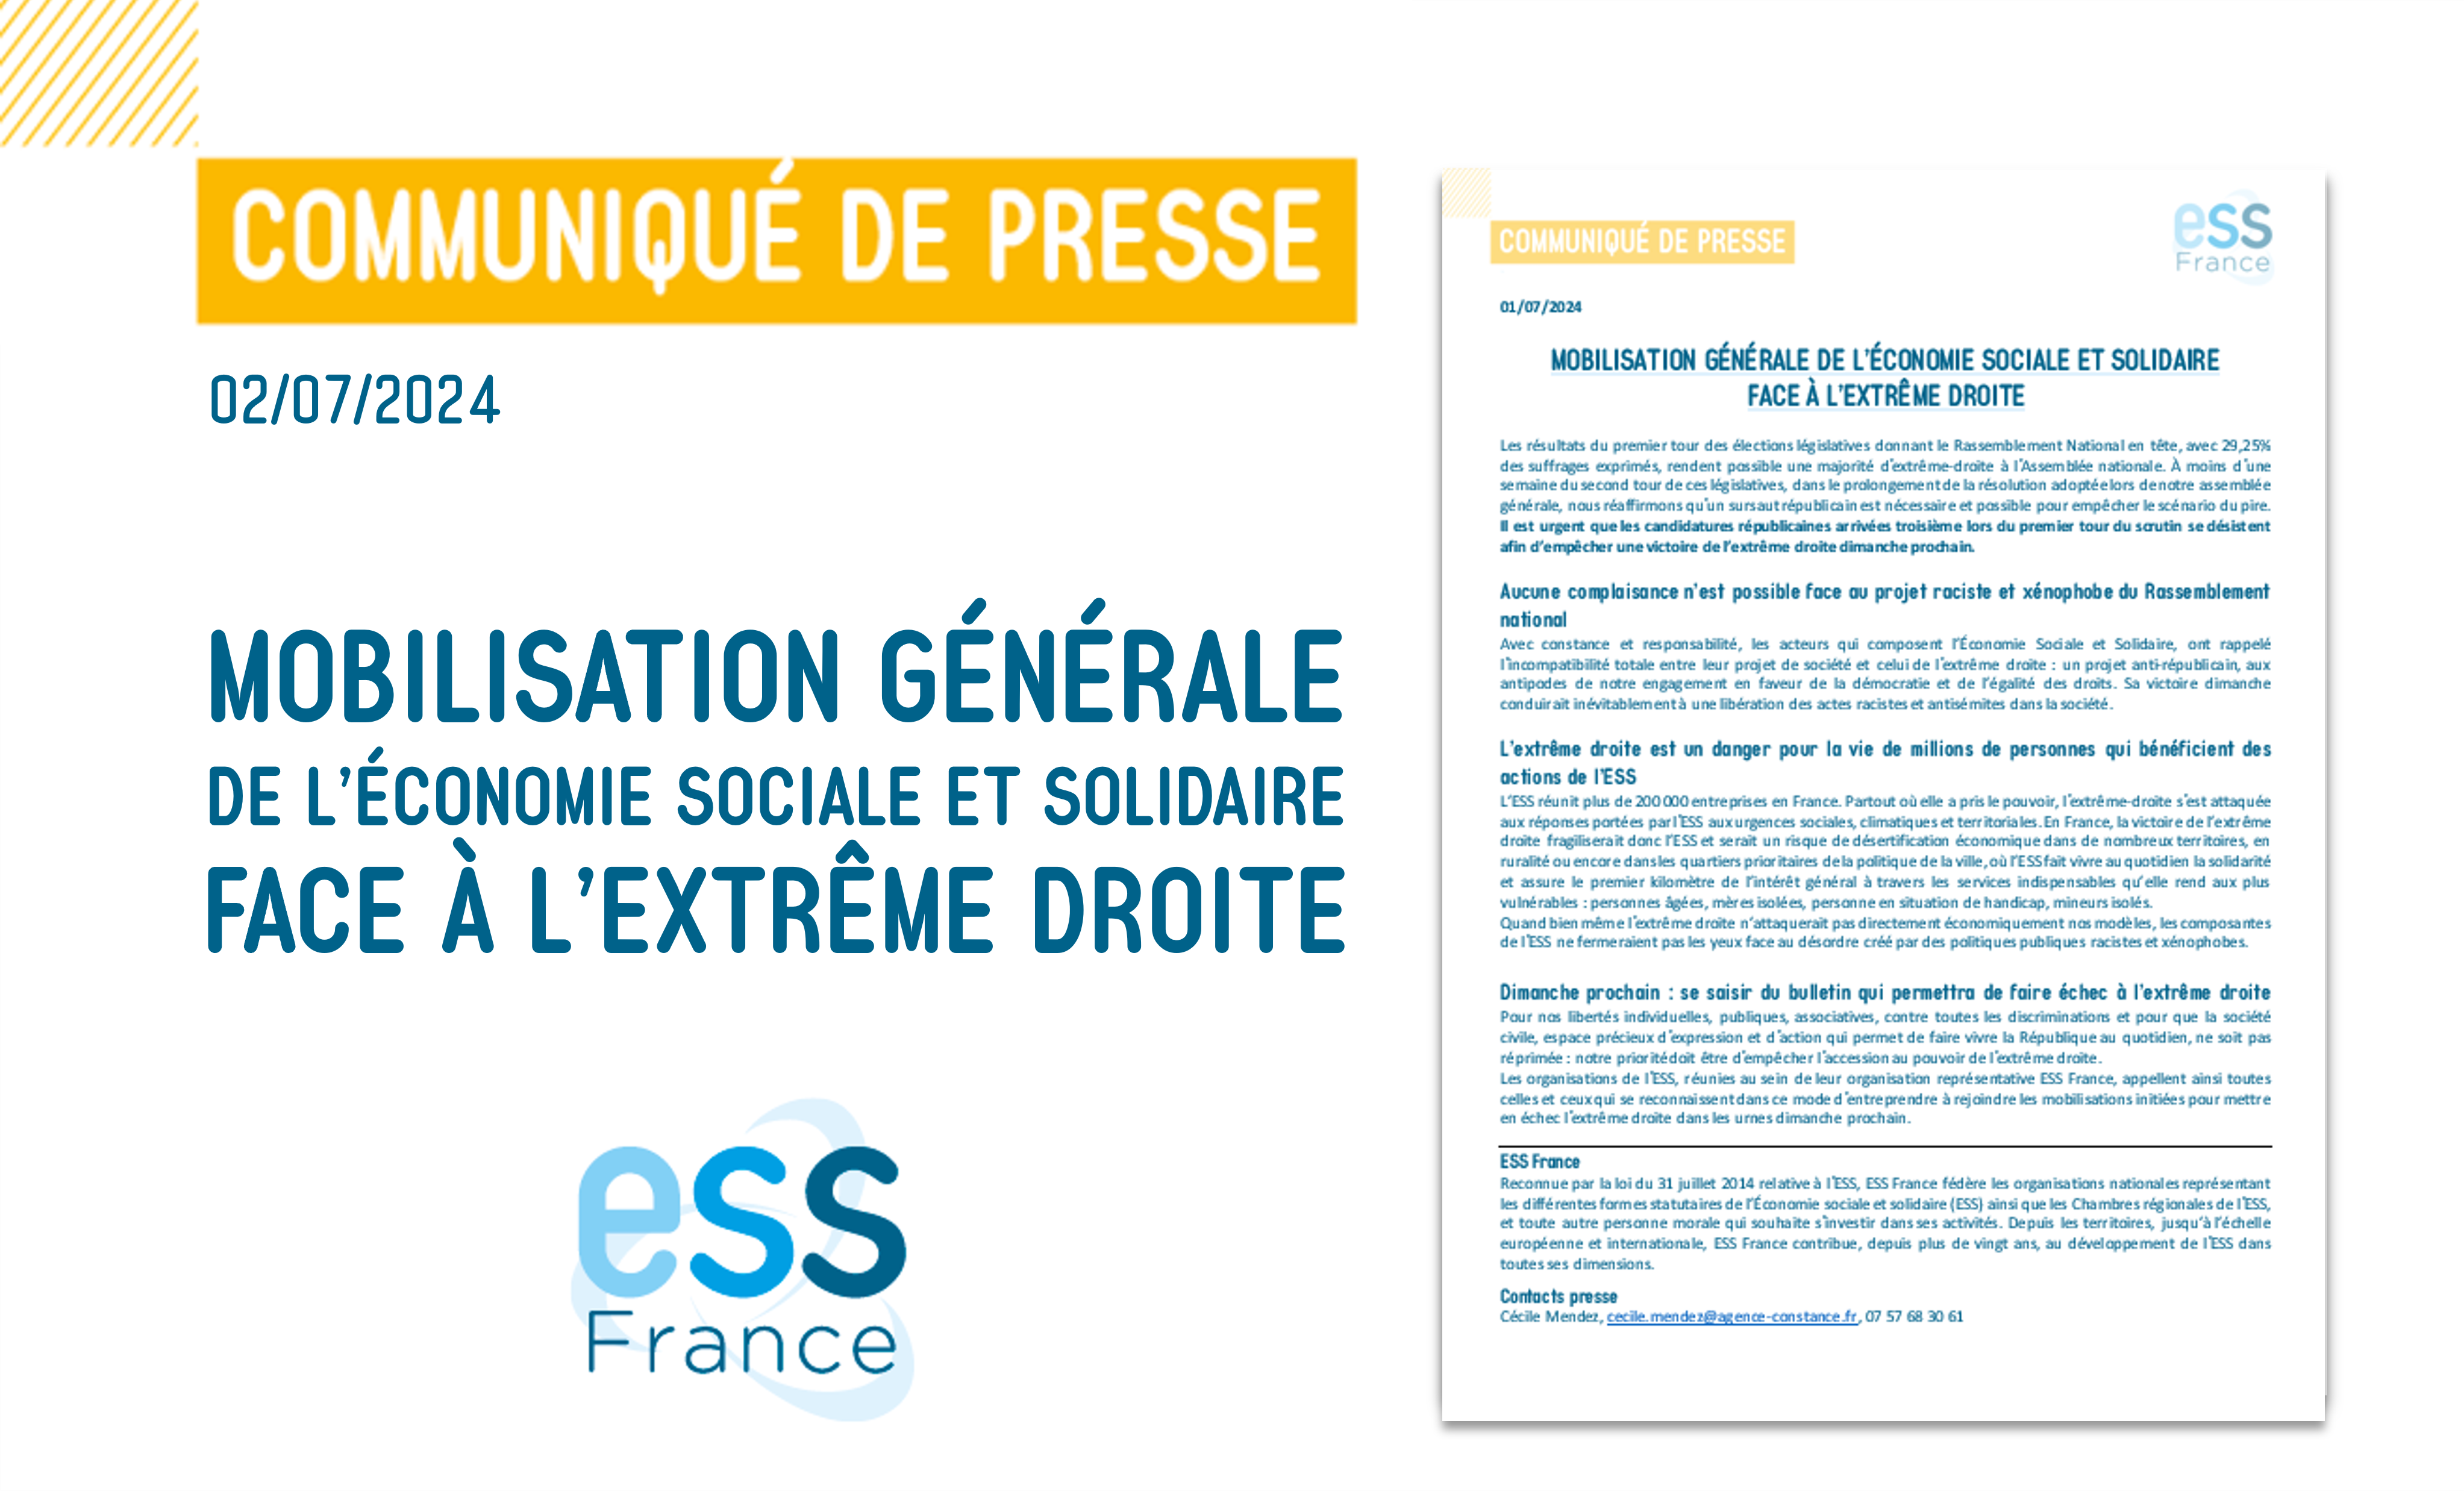 CP d'ESS France : Mobilisation générale de l'économie sociale et solidaire face à l'extrême droite